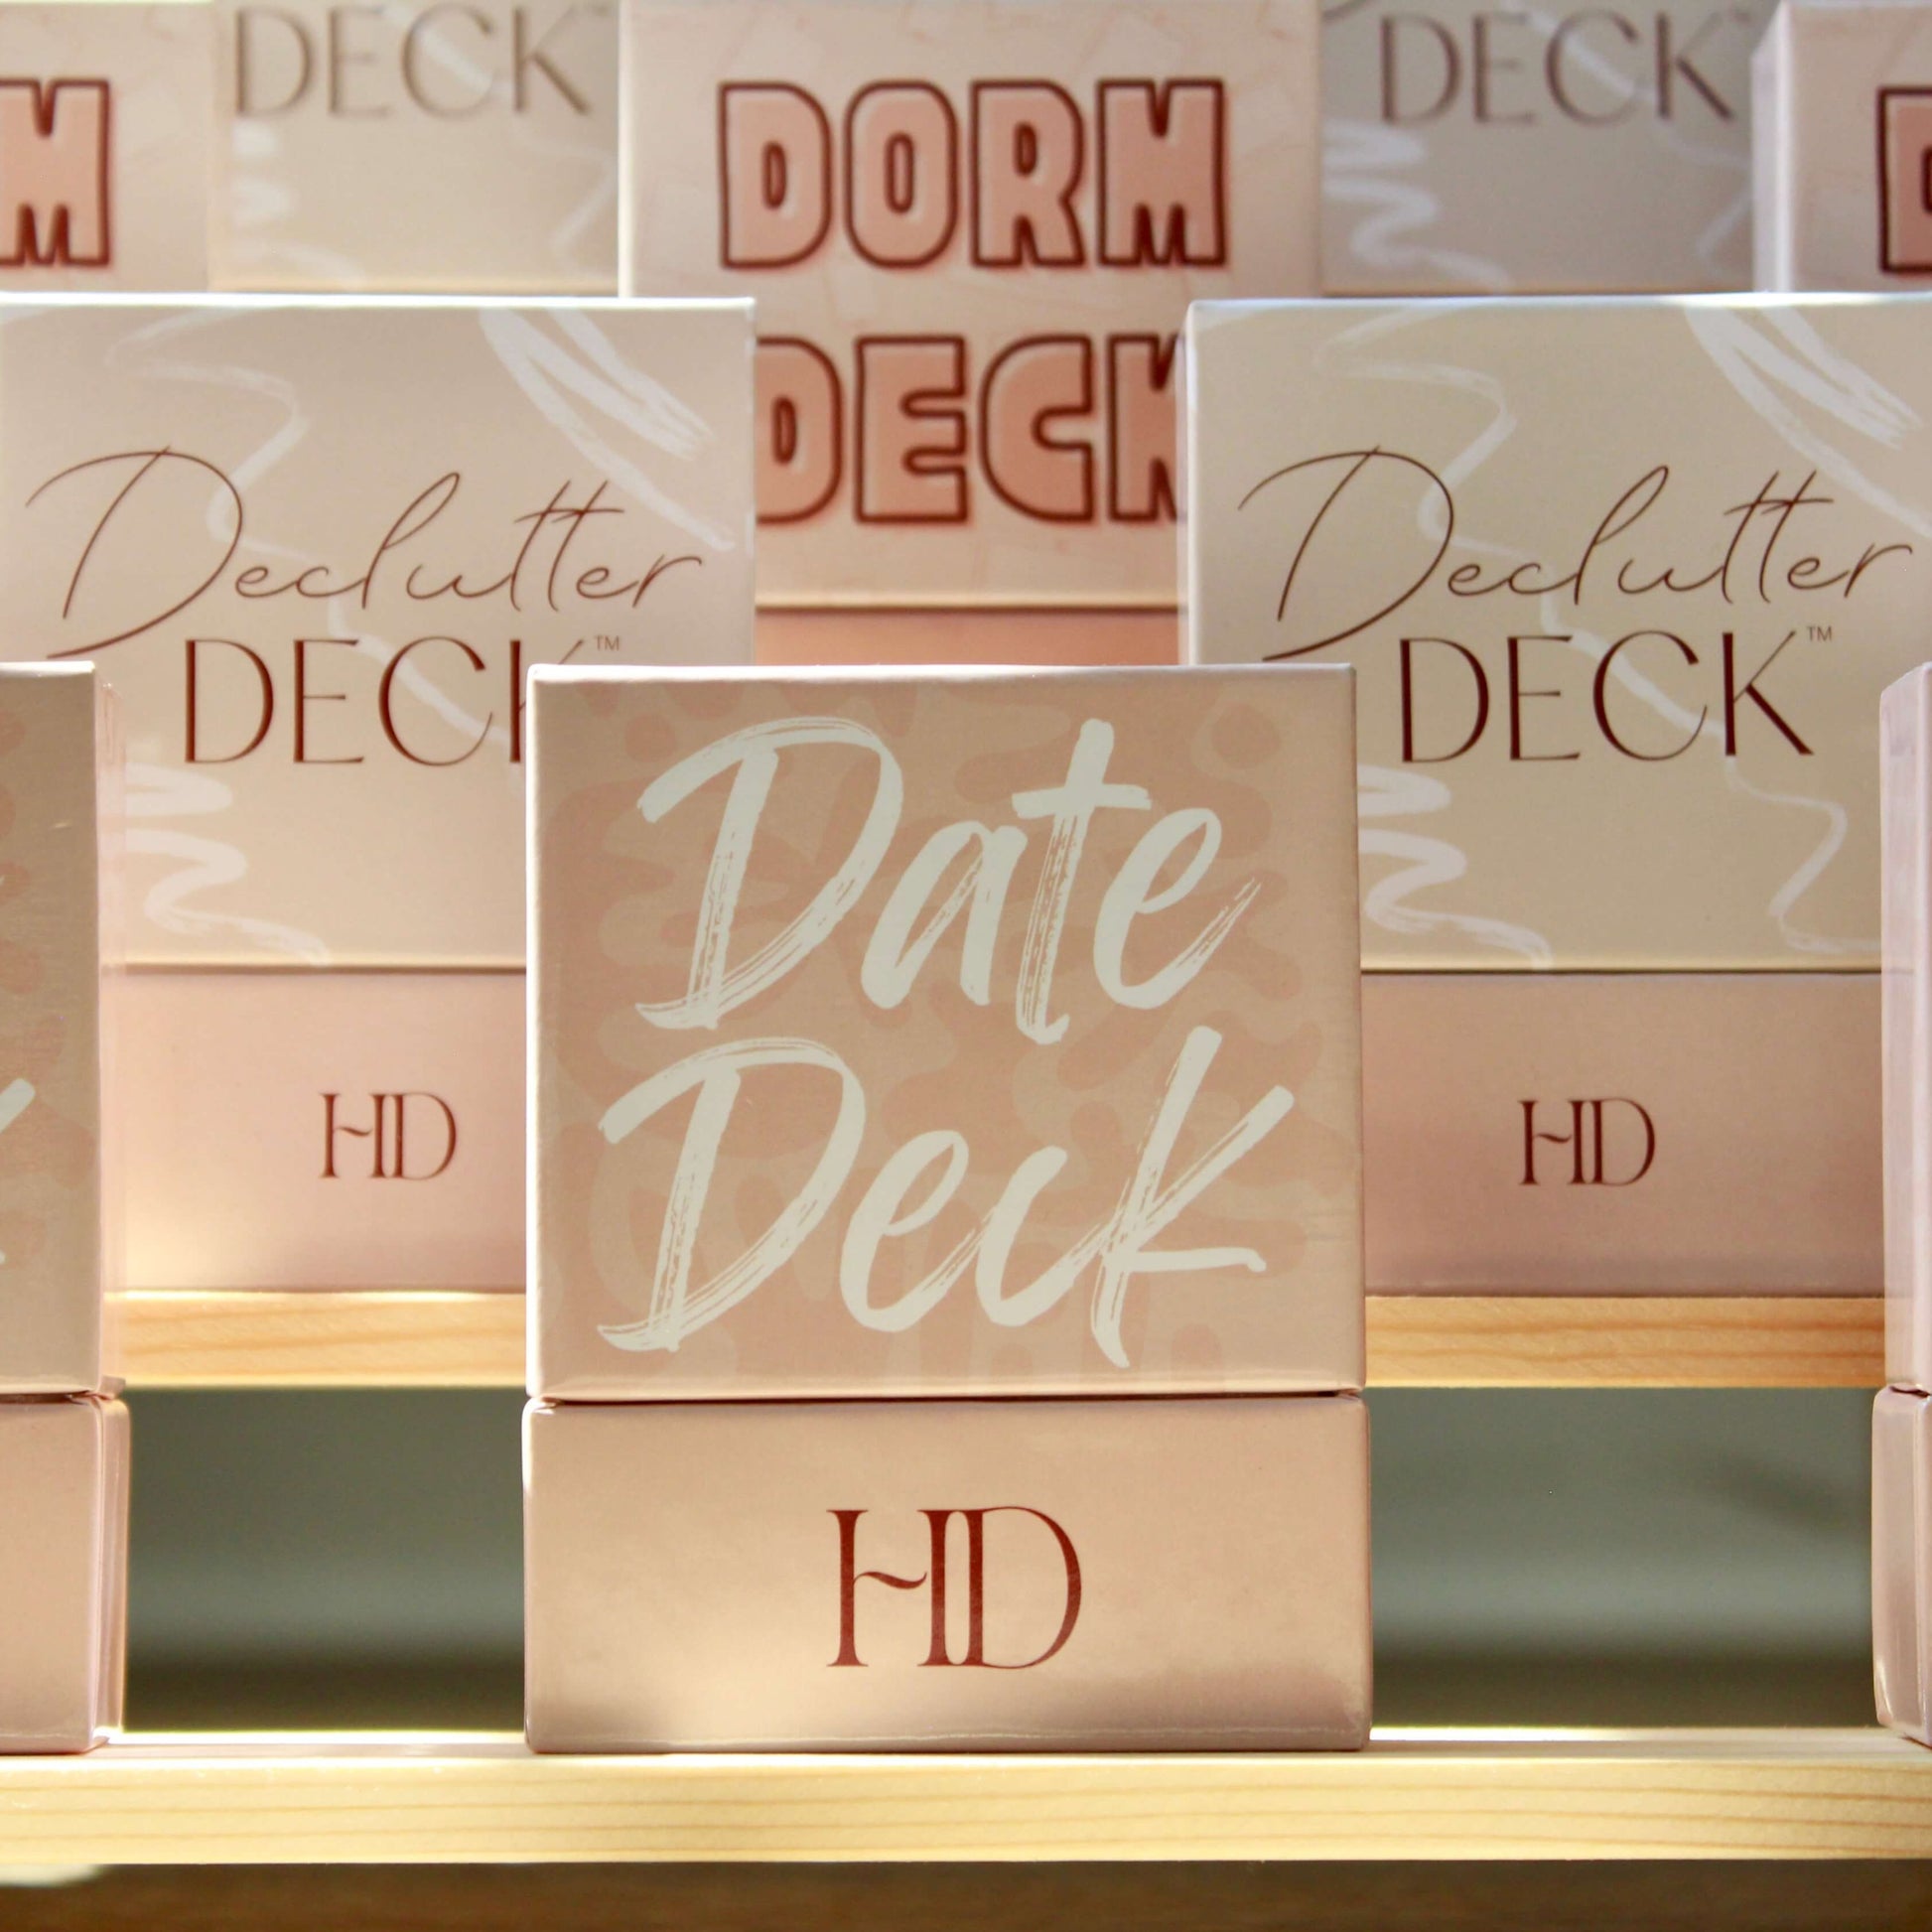 hack decks prompt card decks declutter deck date deck dorm deck